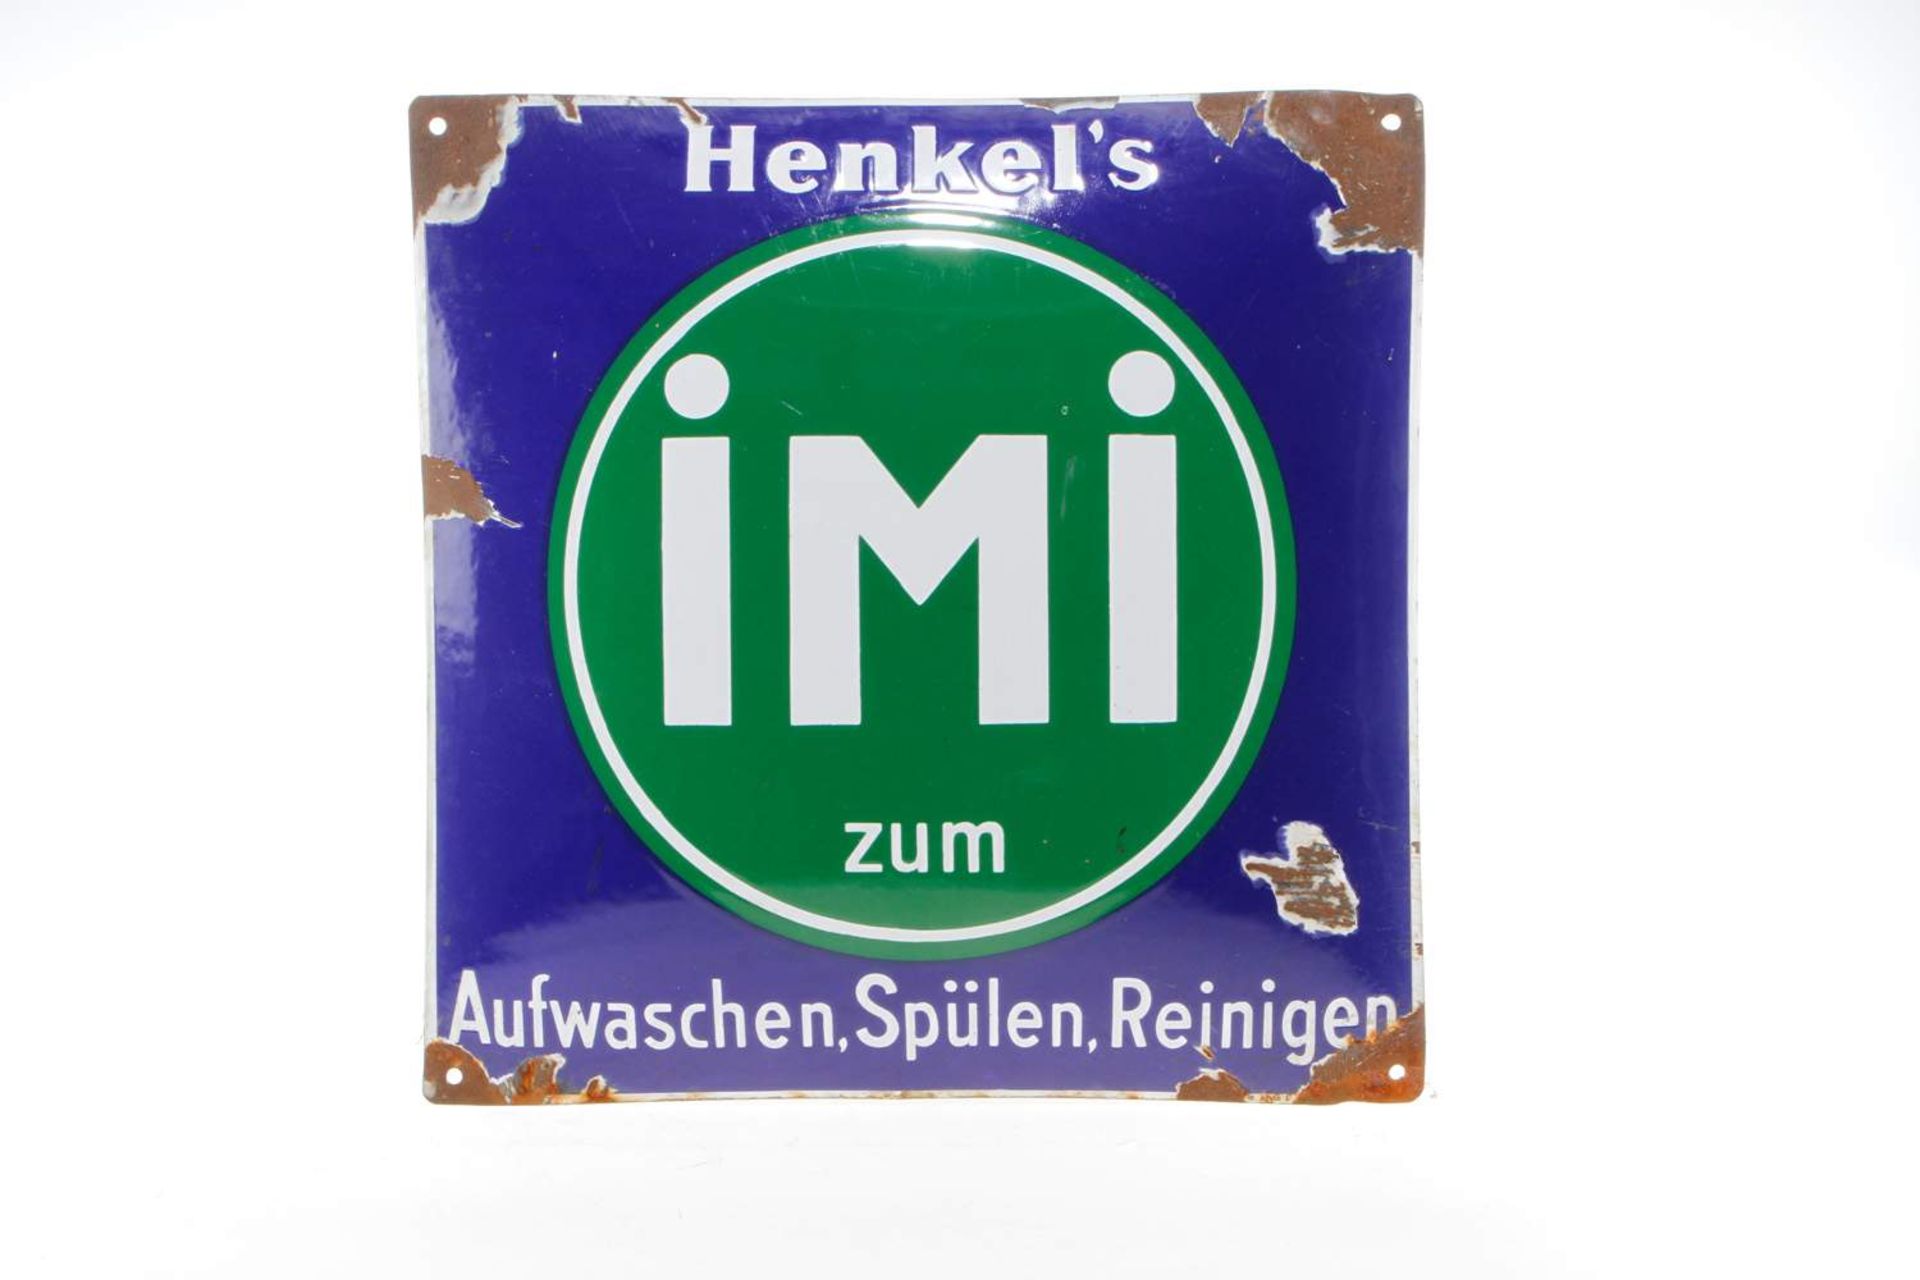 Emailleschild "Henkel`s iMi zum Aufwaschen, Spülen, Reinigen", gewölbt, Markung auf unterem Rand